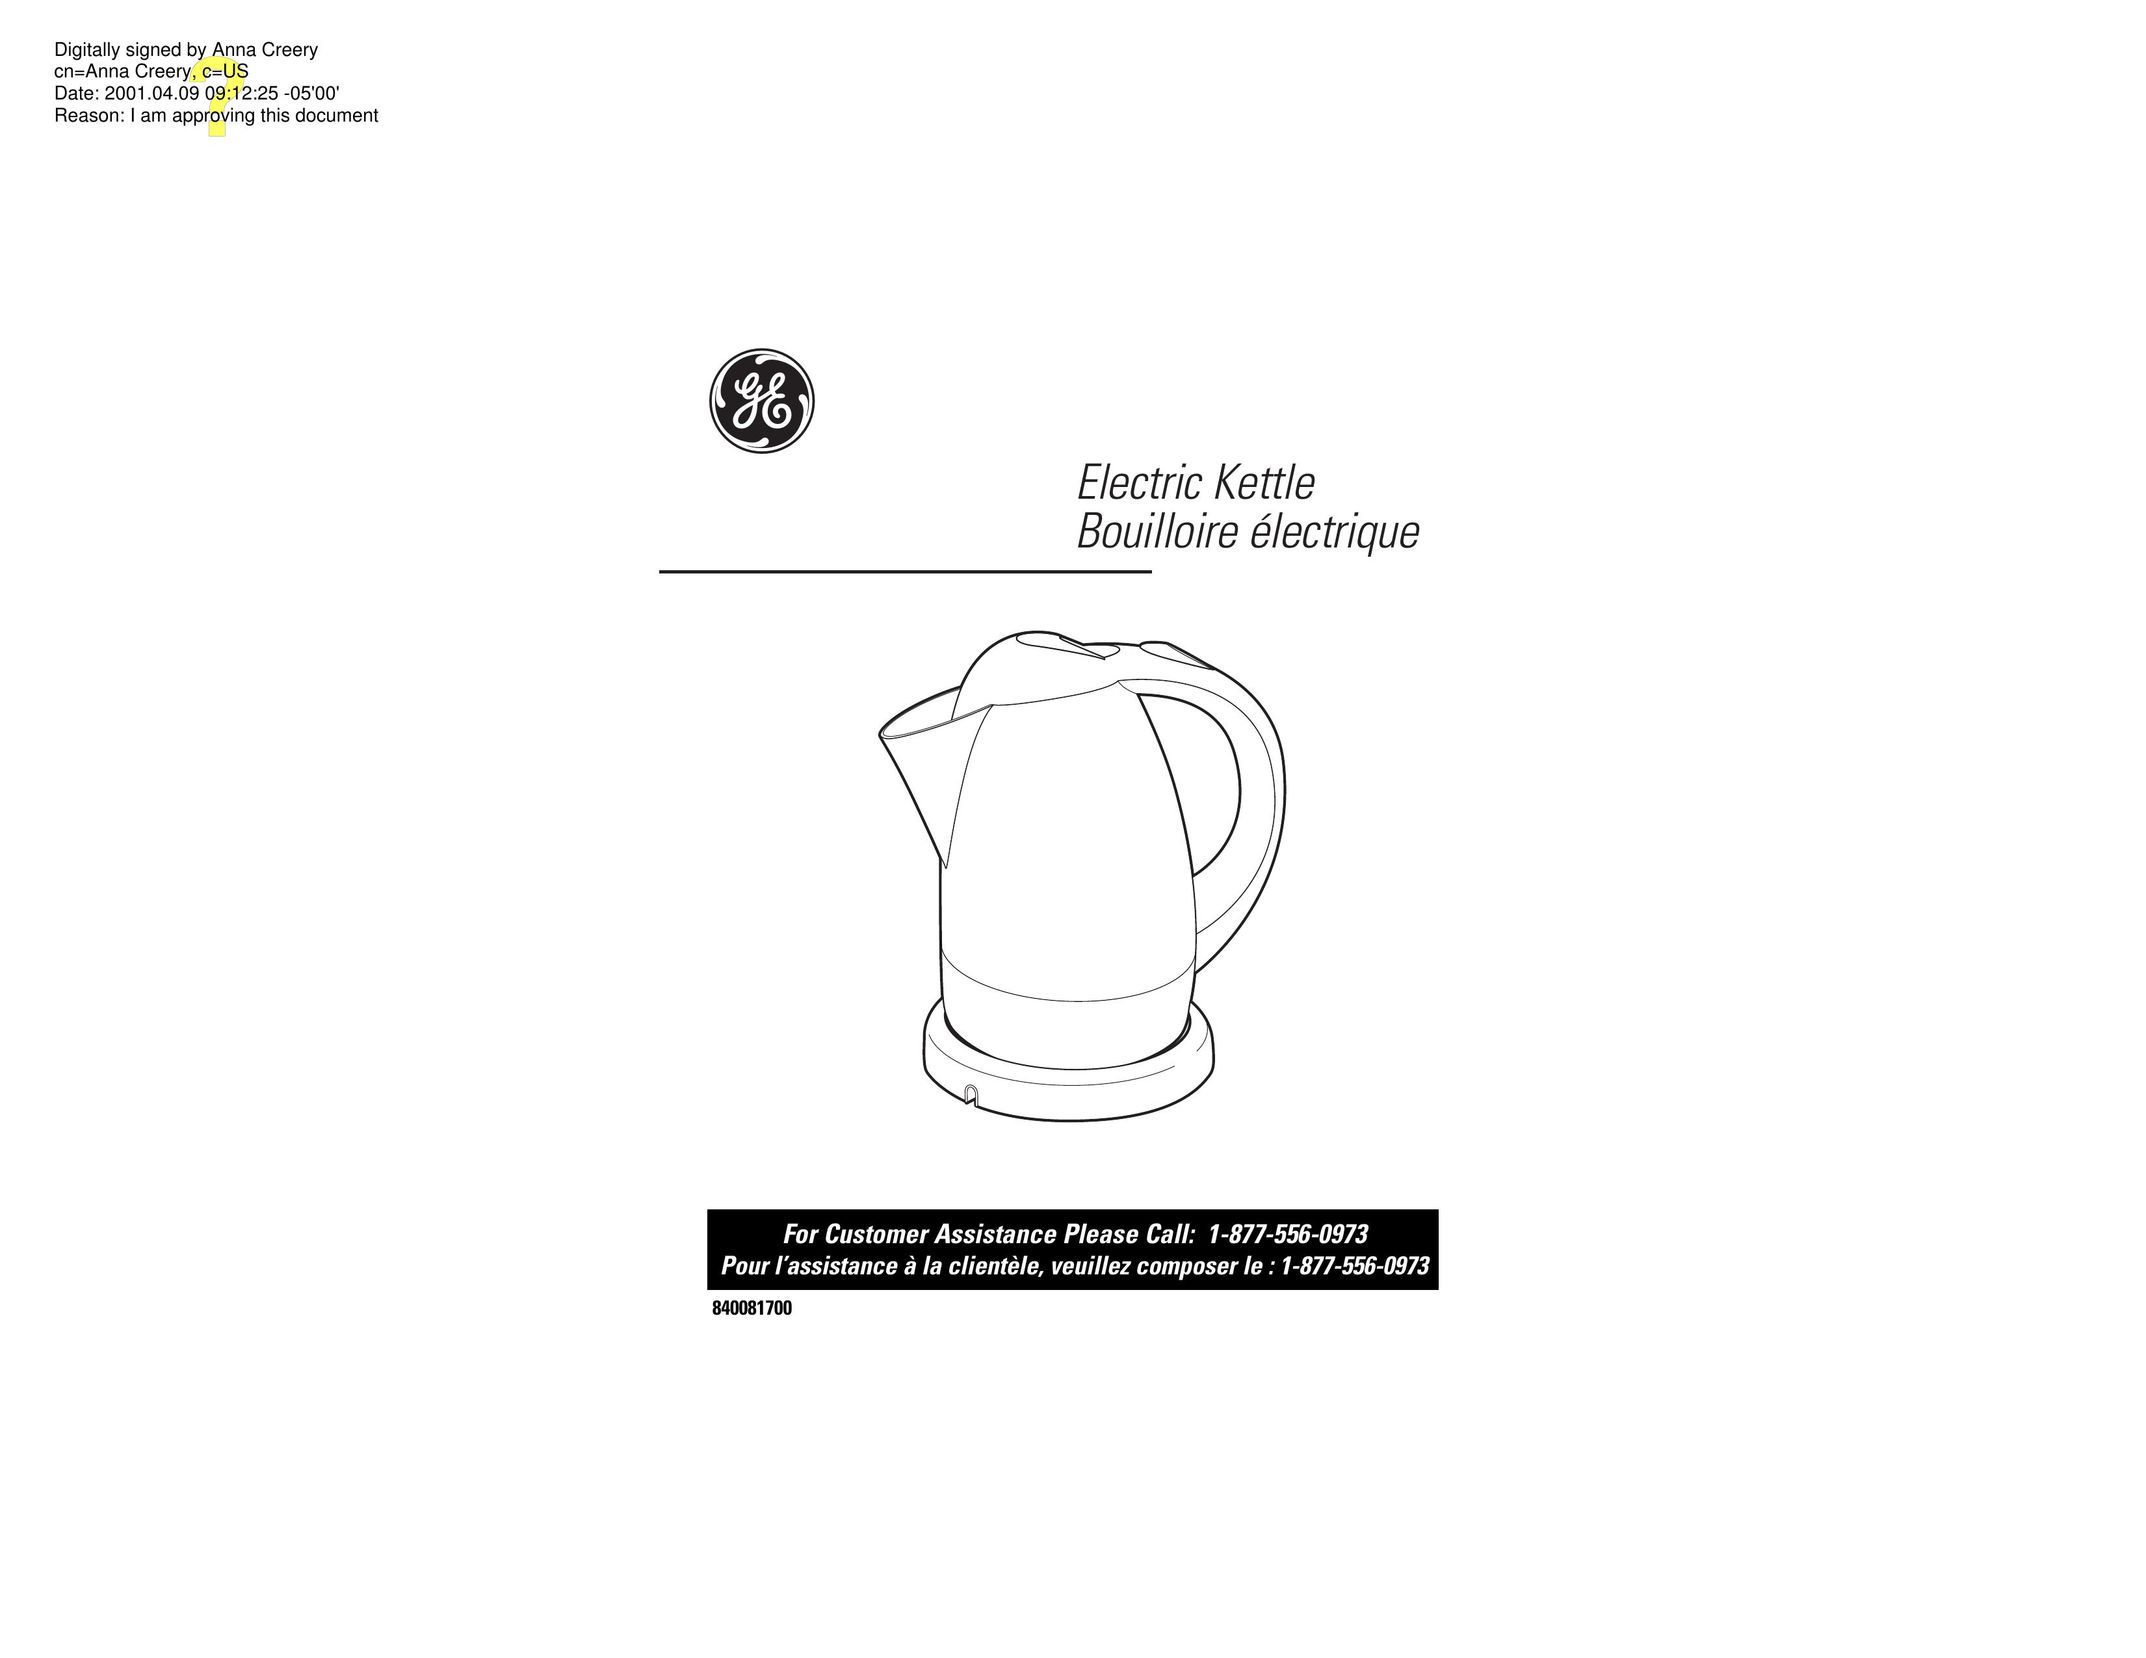 GE 840081700 Hot Beverage Maker User Manual